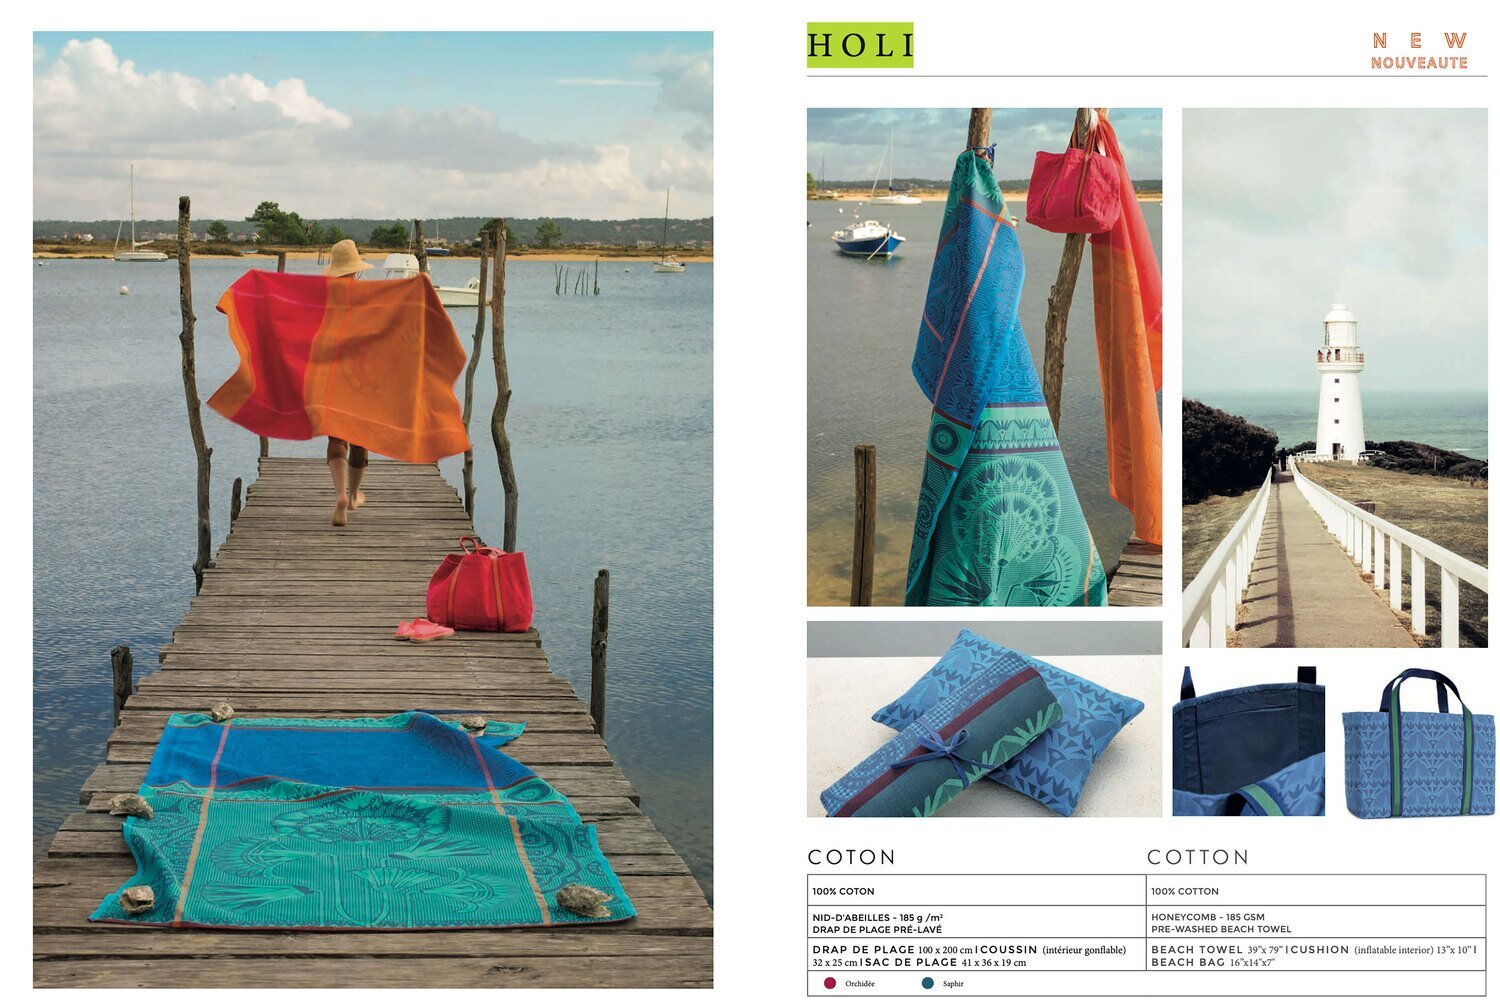 Le Jacquard Francais Holi Orchid Beach Towel 39 x 79 Inch 26295